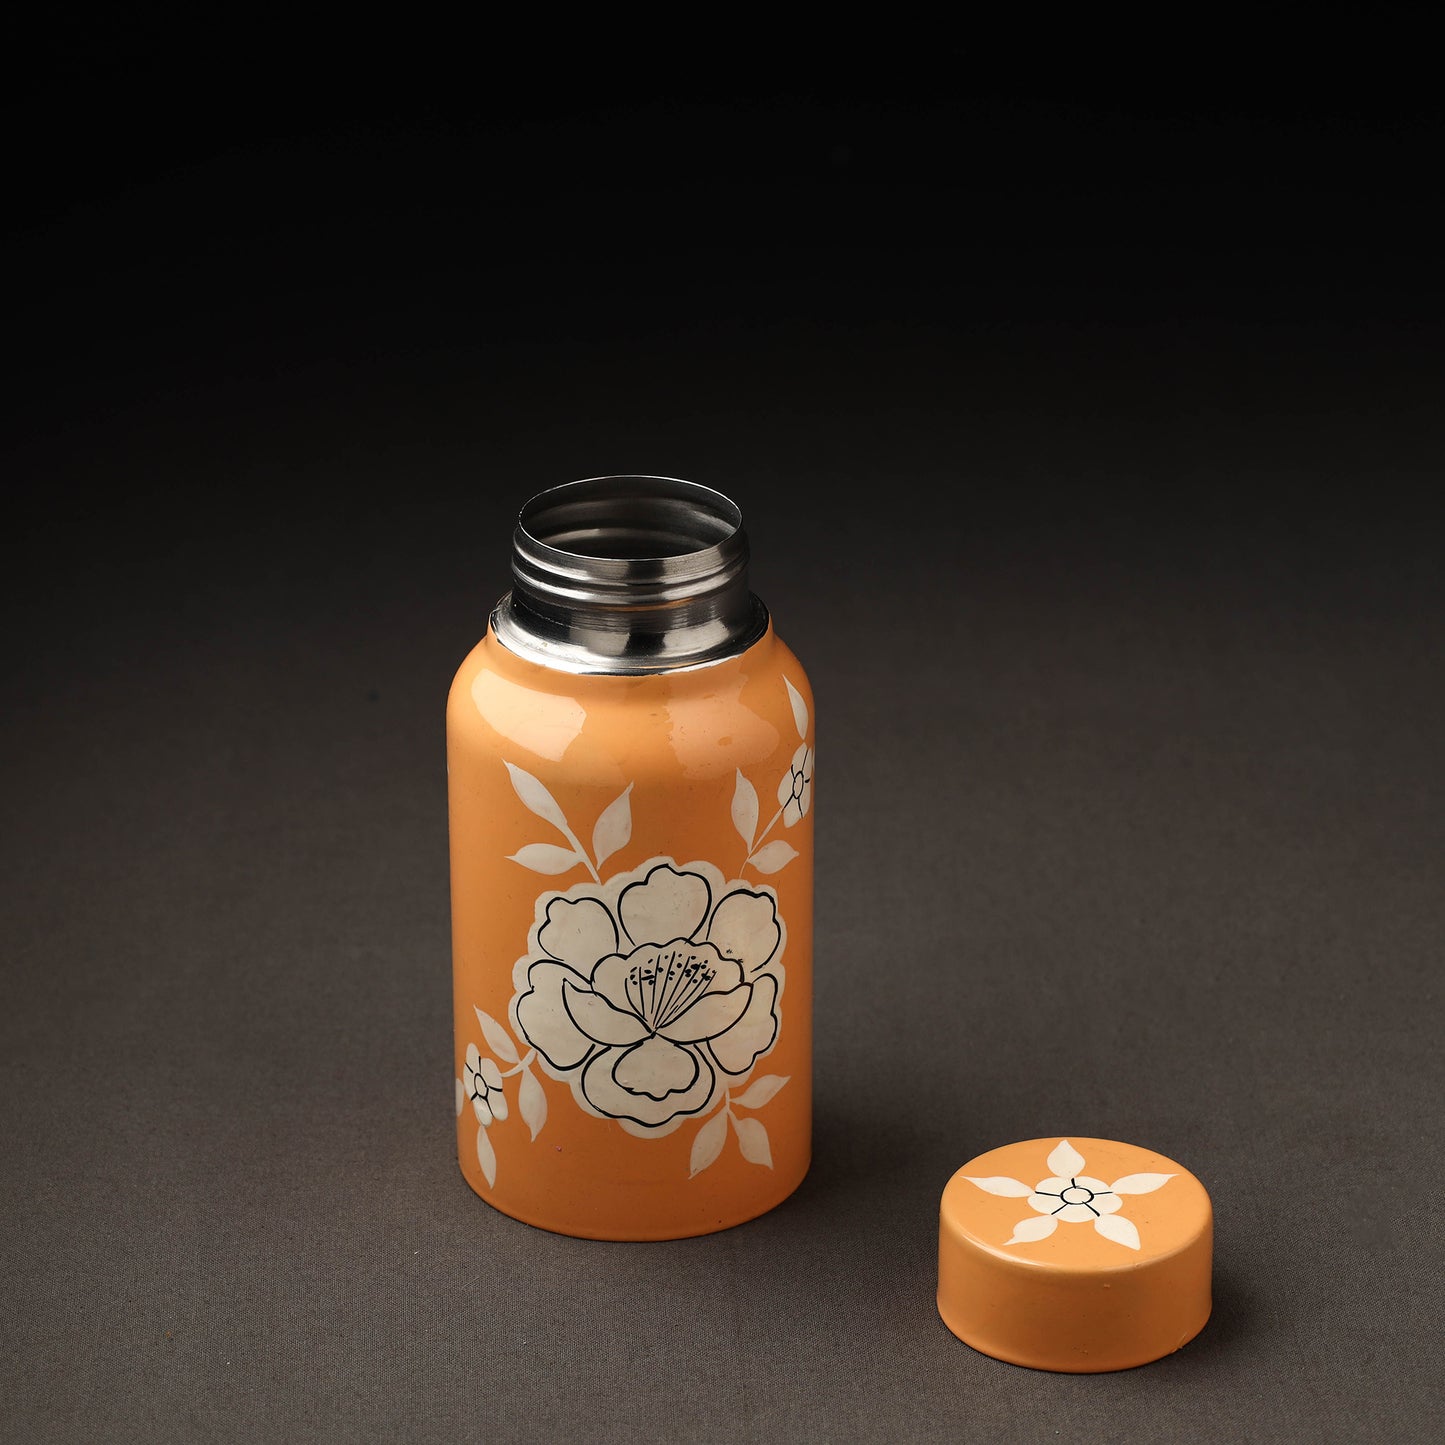 Floral Handpainted Enamelware Stainless Steel Bottle (500 ml)